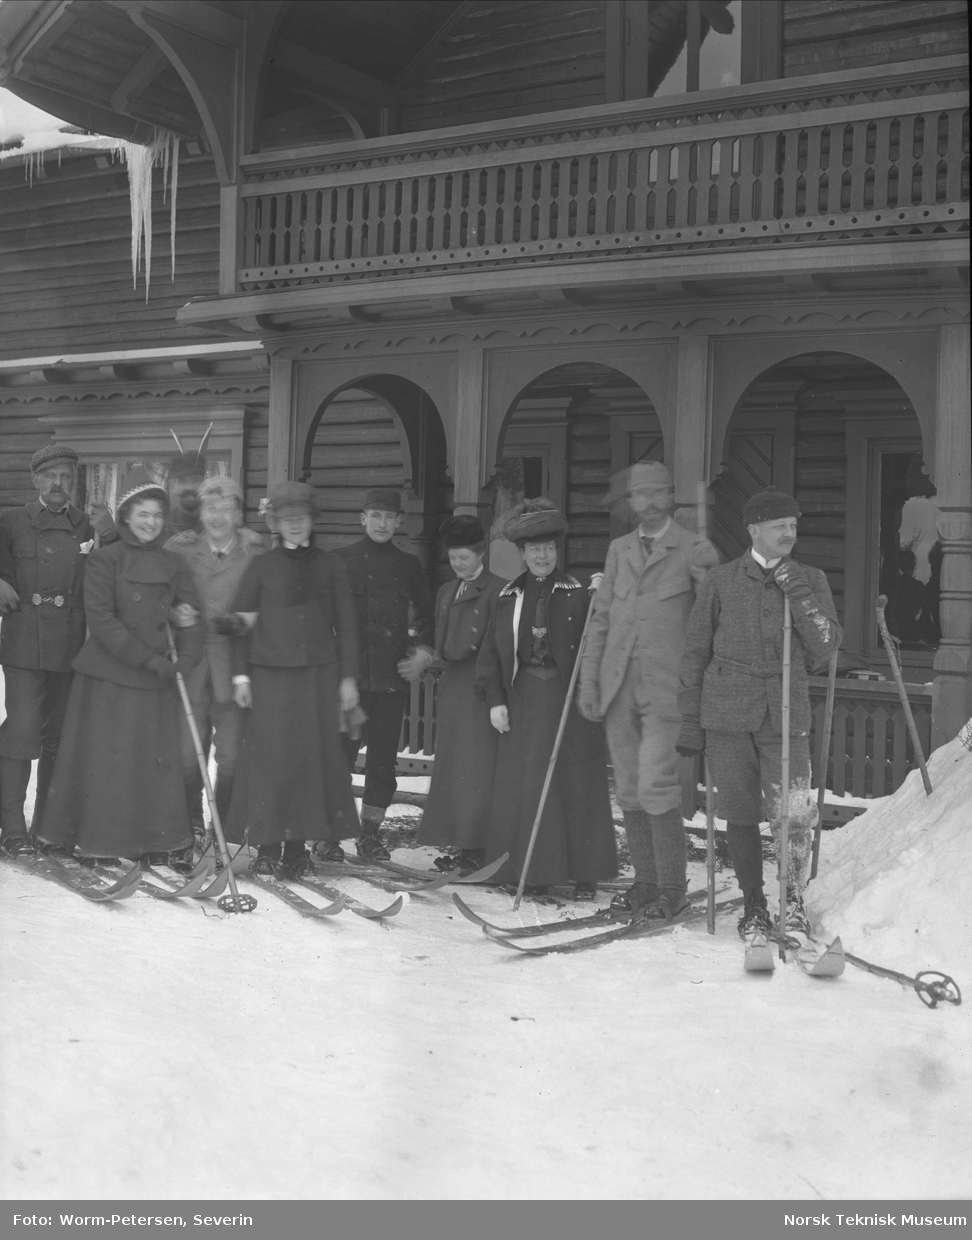 Gruppe på ski utenfor hus